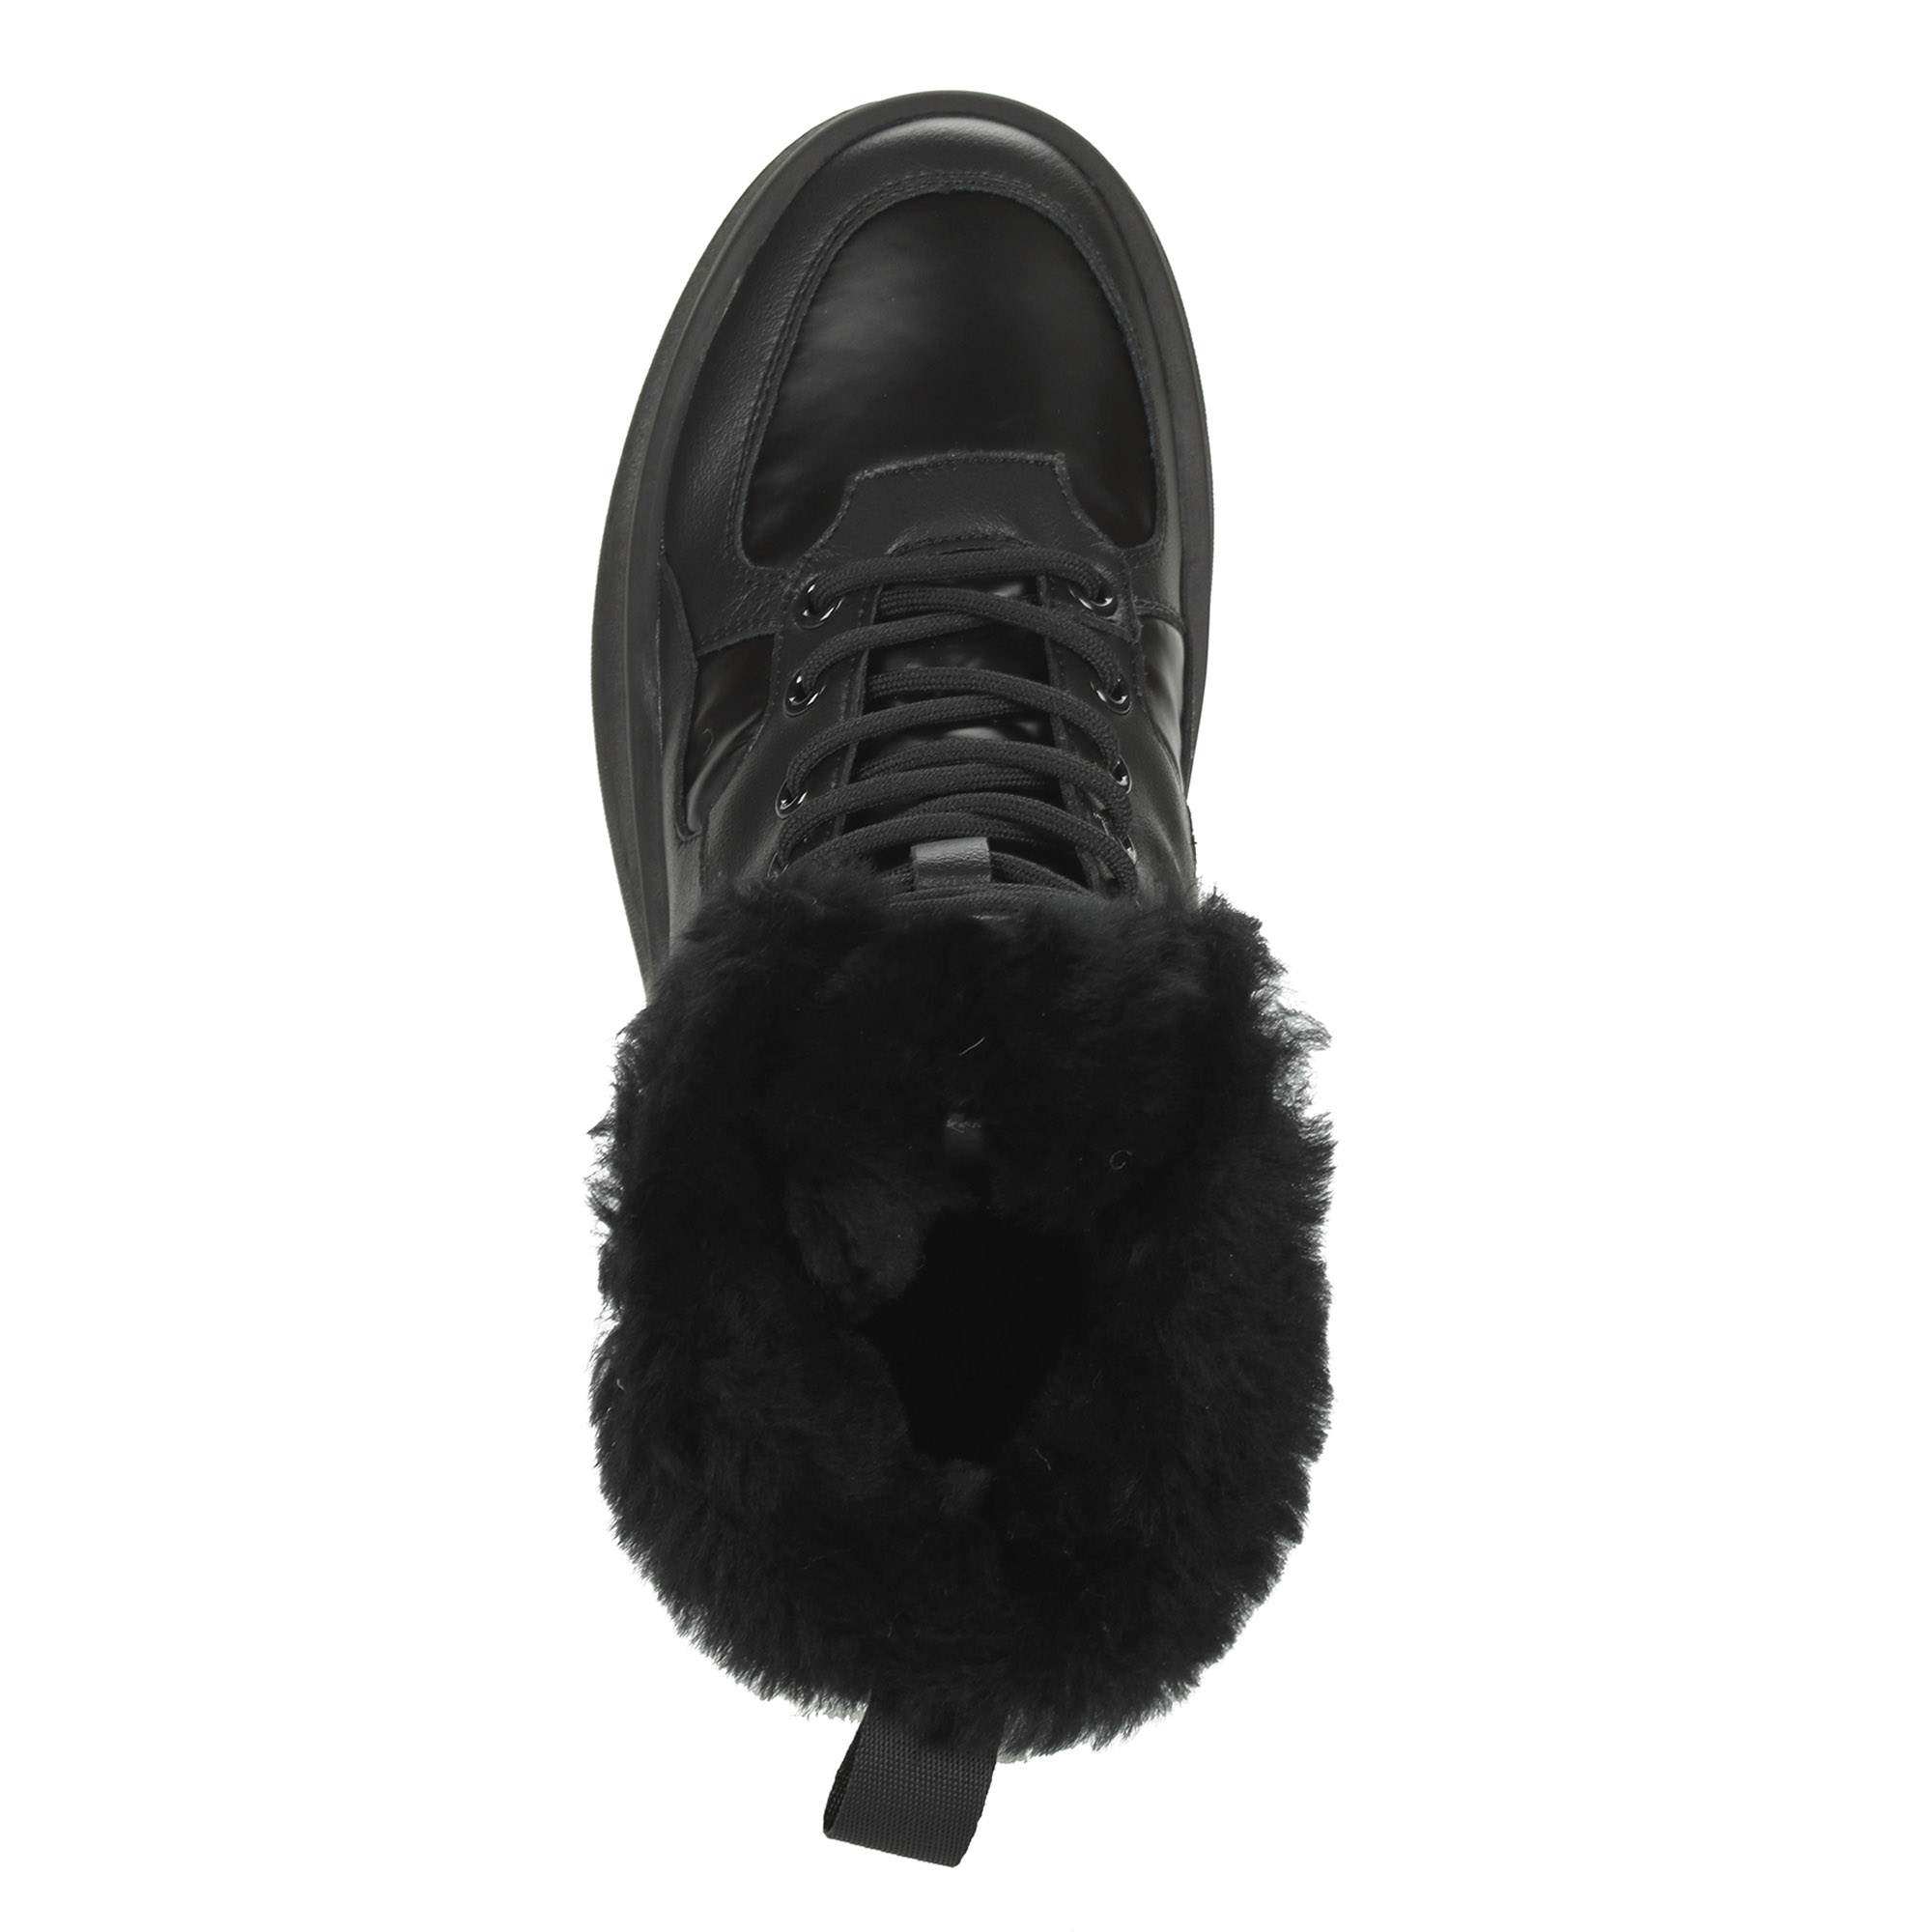 Черные высокие кроссовки из комбинированных материалов смеховой опушкой на подкладке из натуральной шерсти на утолщенной платформе Respect, цвет черный - фото 7